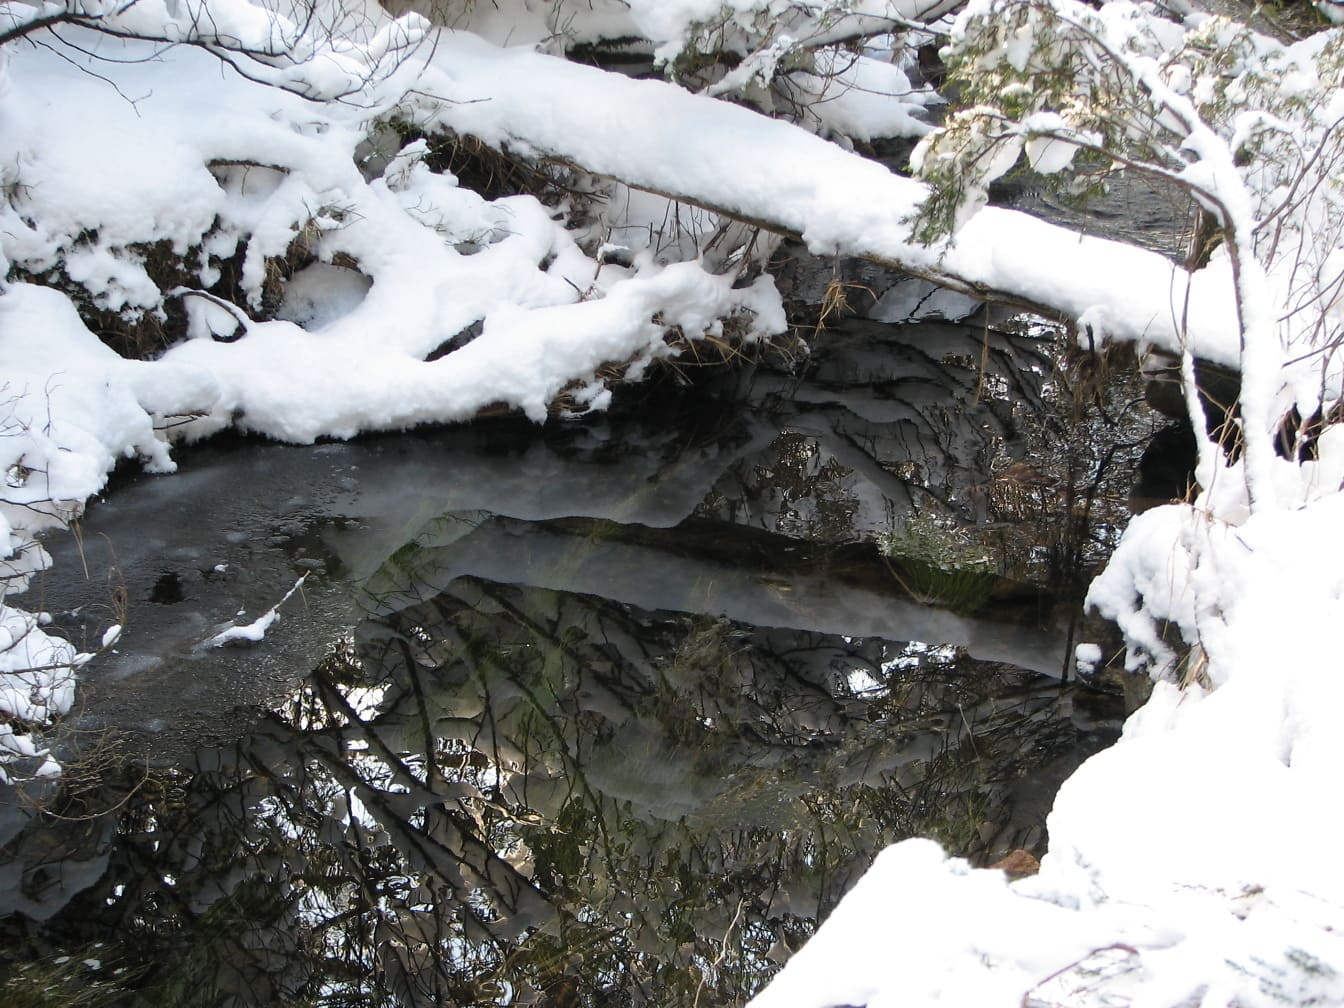 Strøm med refleksion af snedækkede grene på koldt vand og med buske på flodbredden